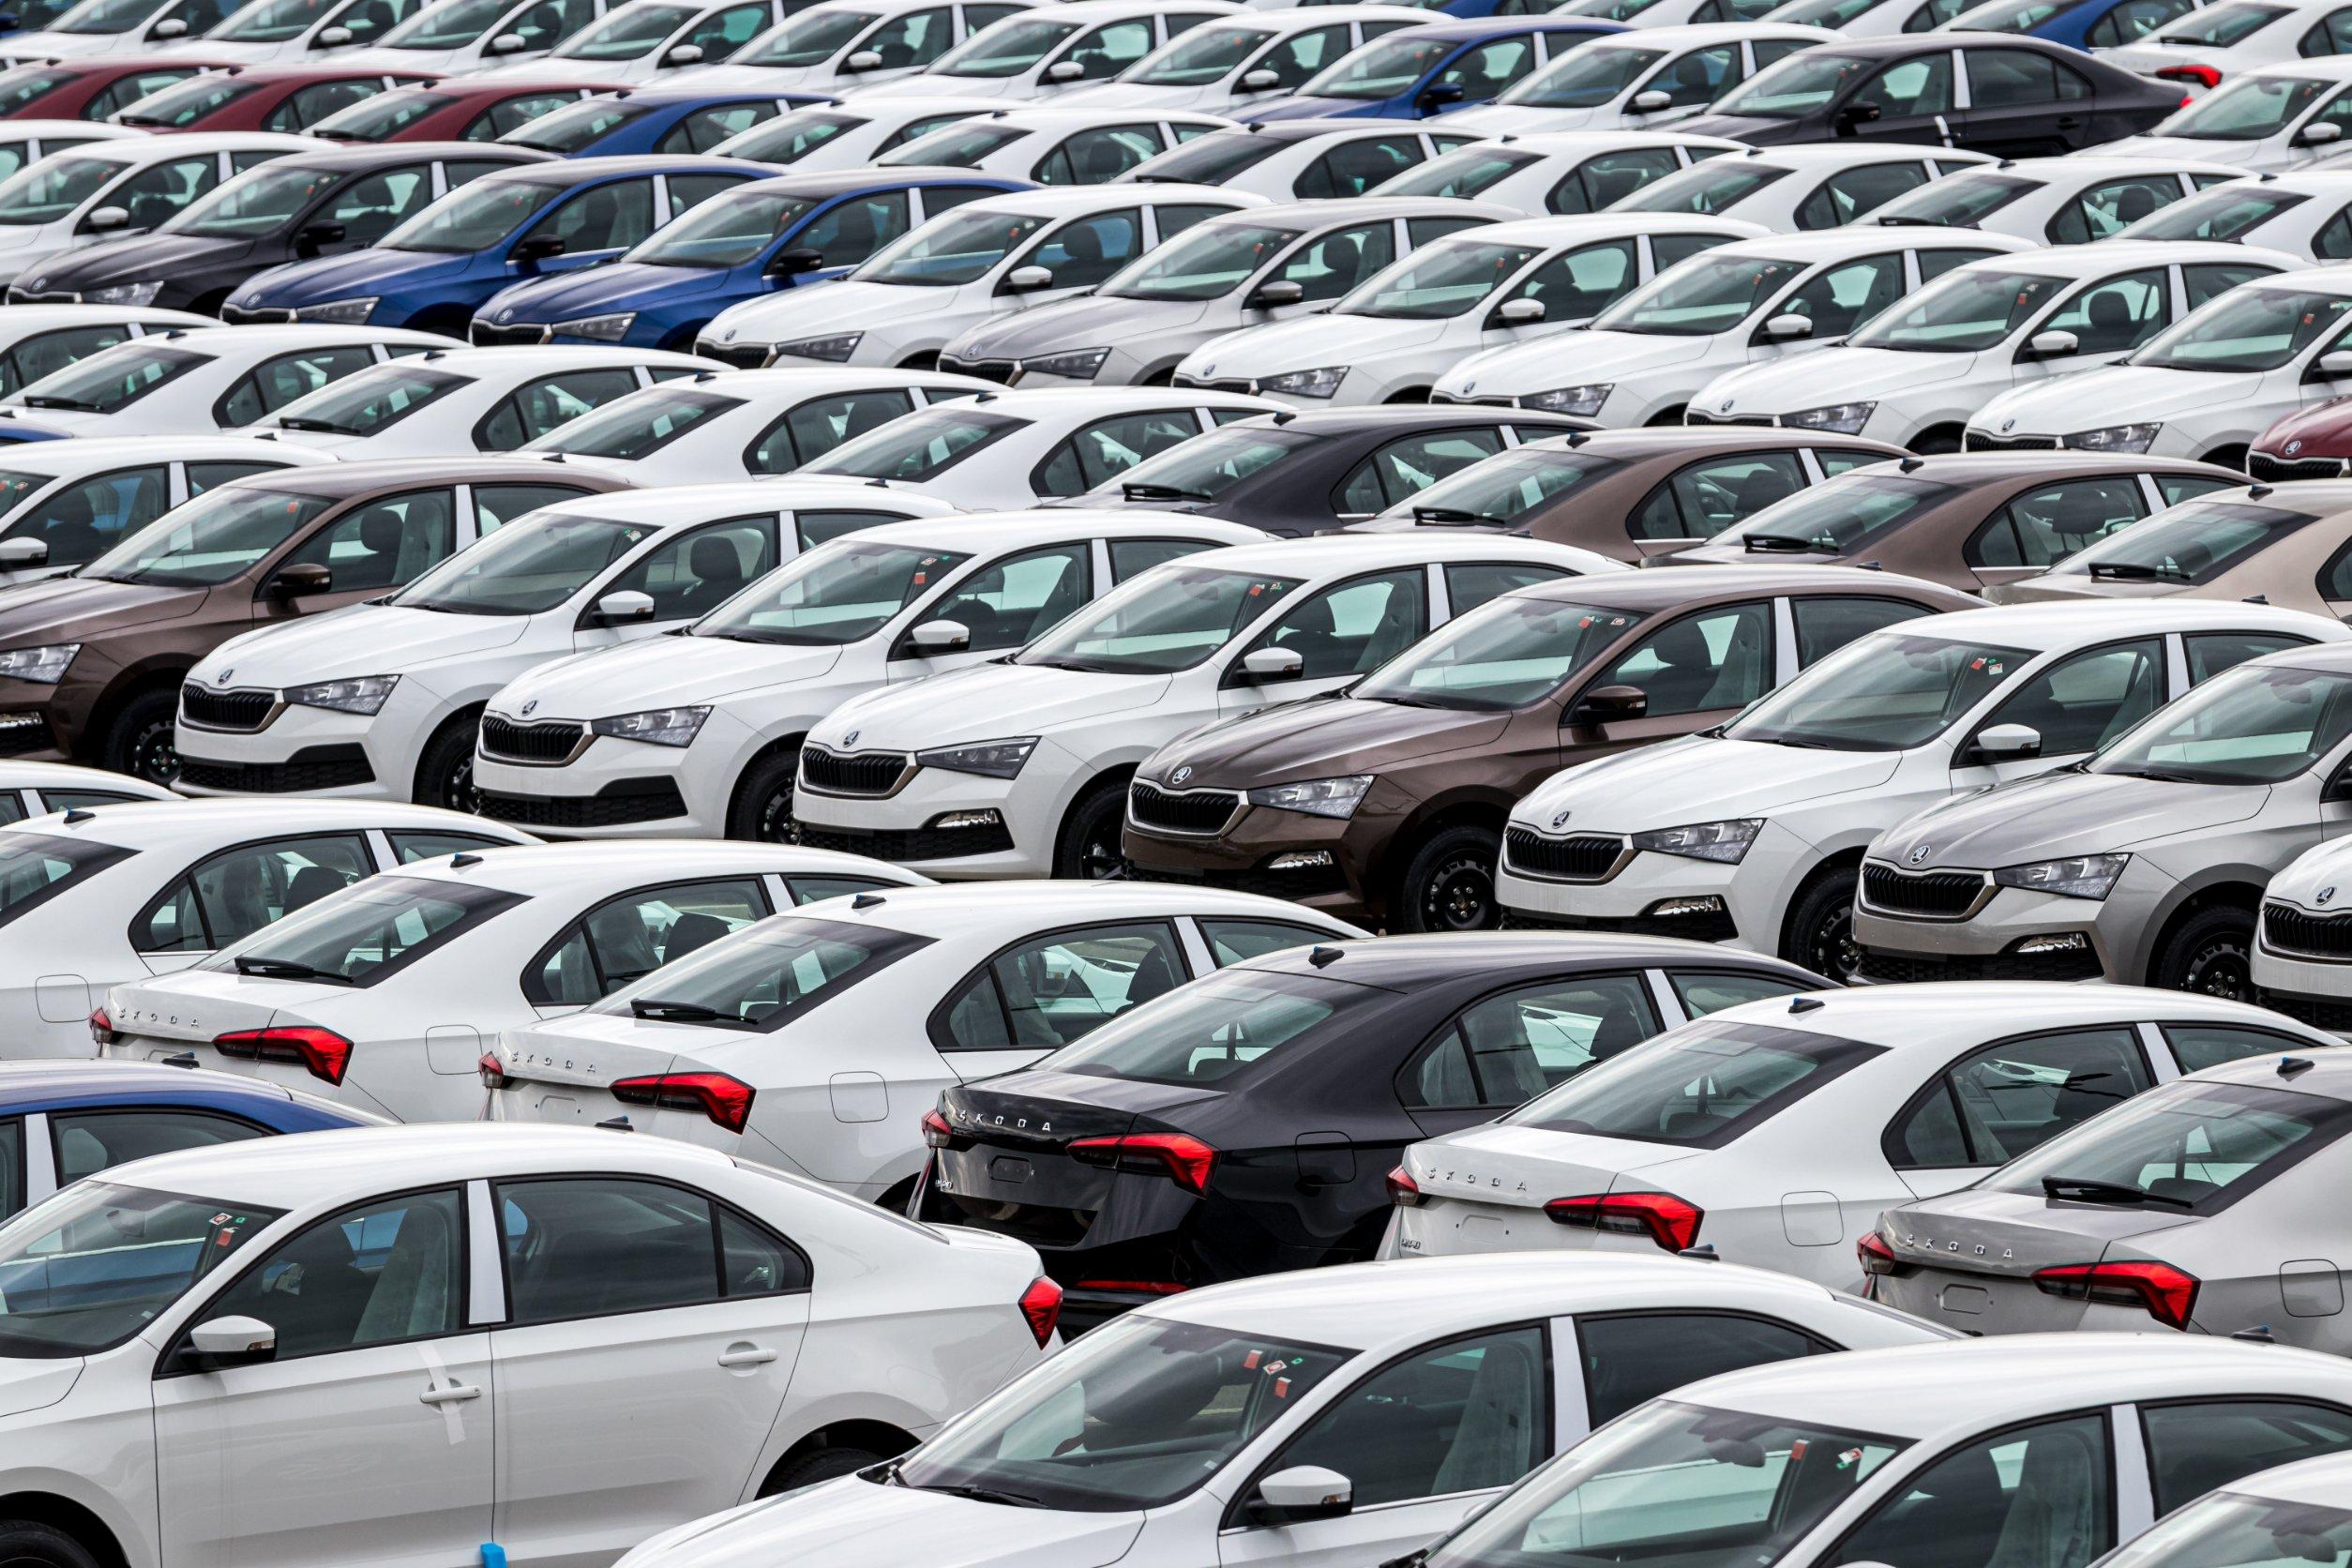 Auto nuove in Europa: -12% a maggio, in calo per l’11^ mese consecutivo